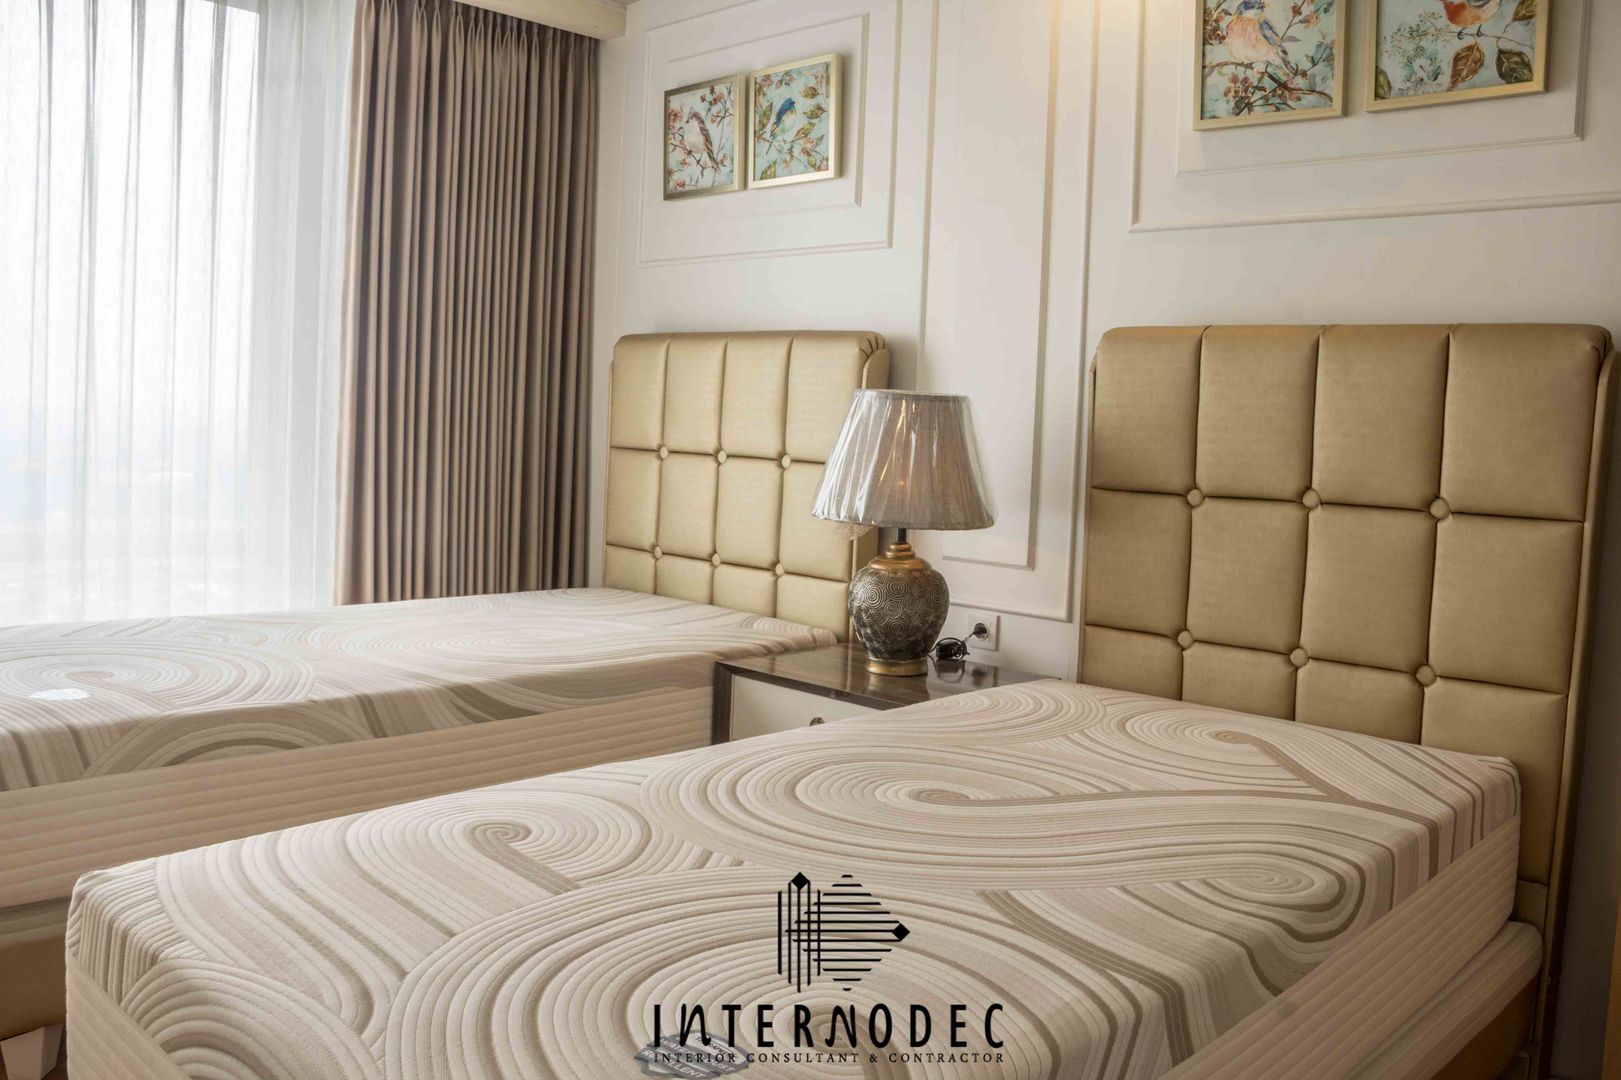 Classic & Luxurious Apartment Mrs. CS, Internodec Internodec ห้องนอน